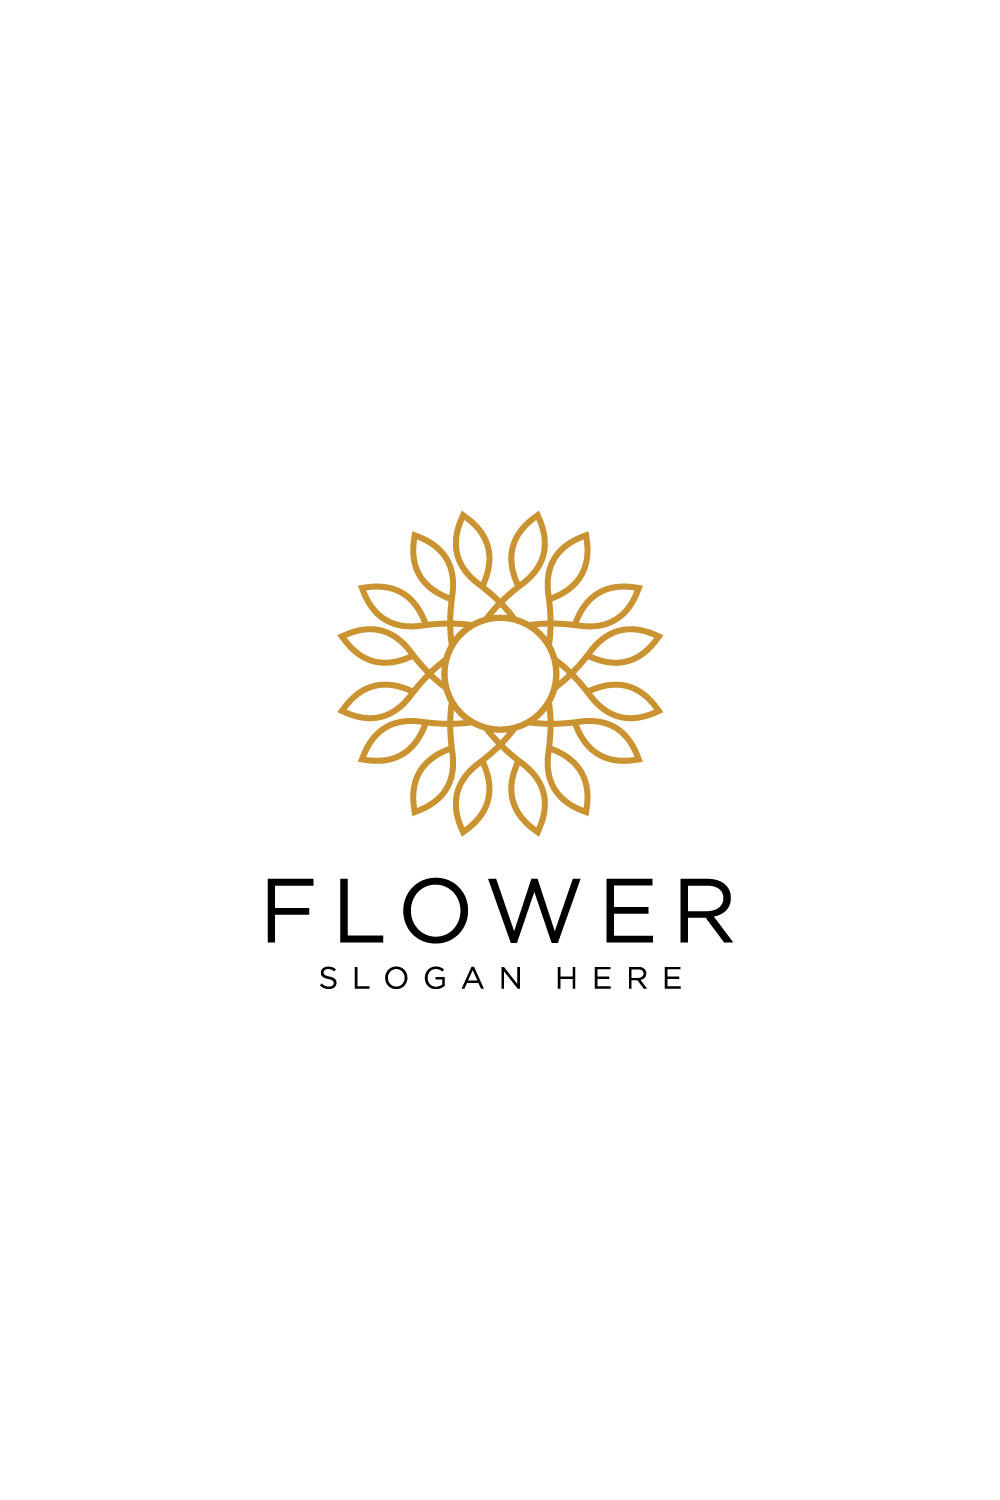 flower logo vector pinterest preview image.